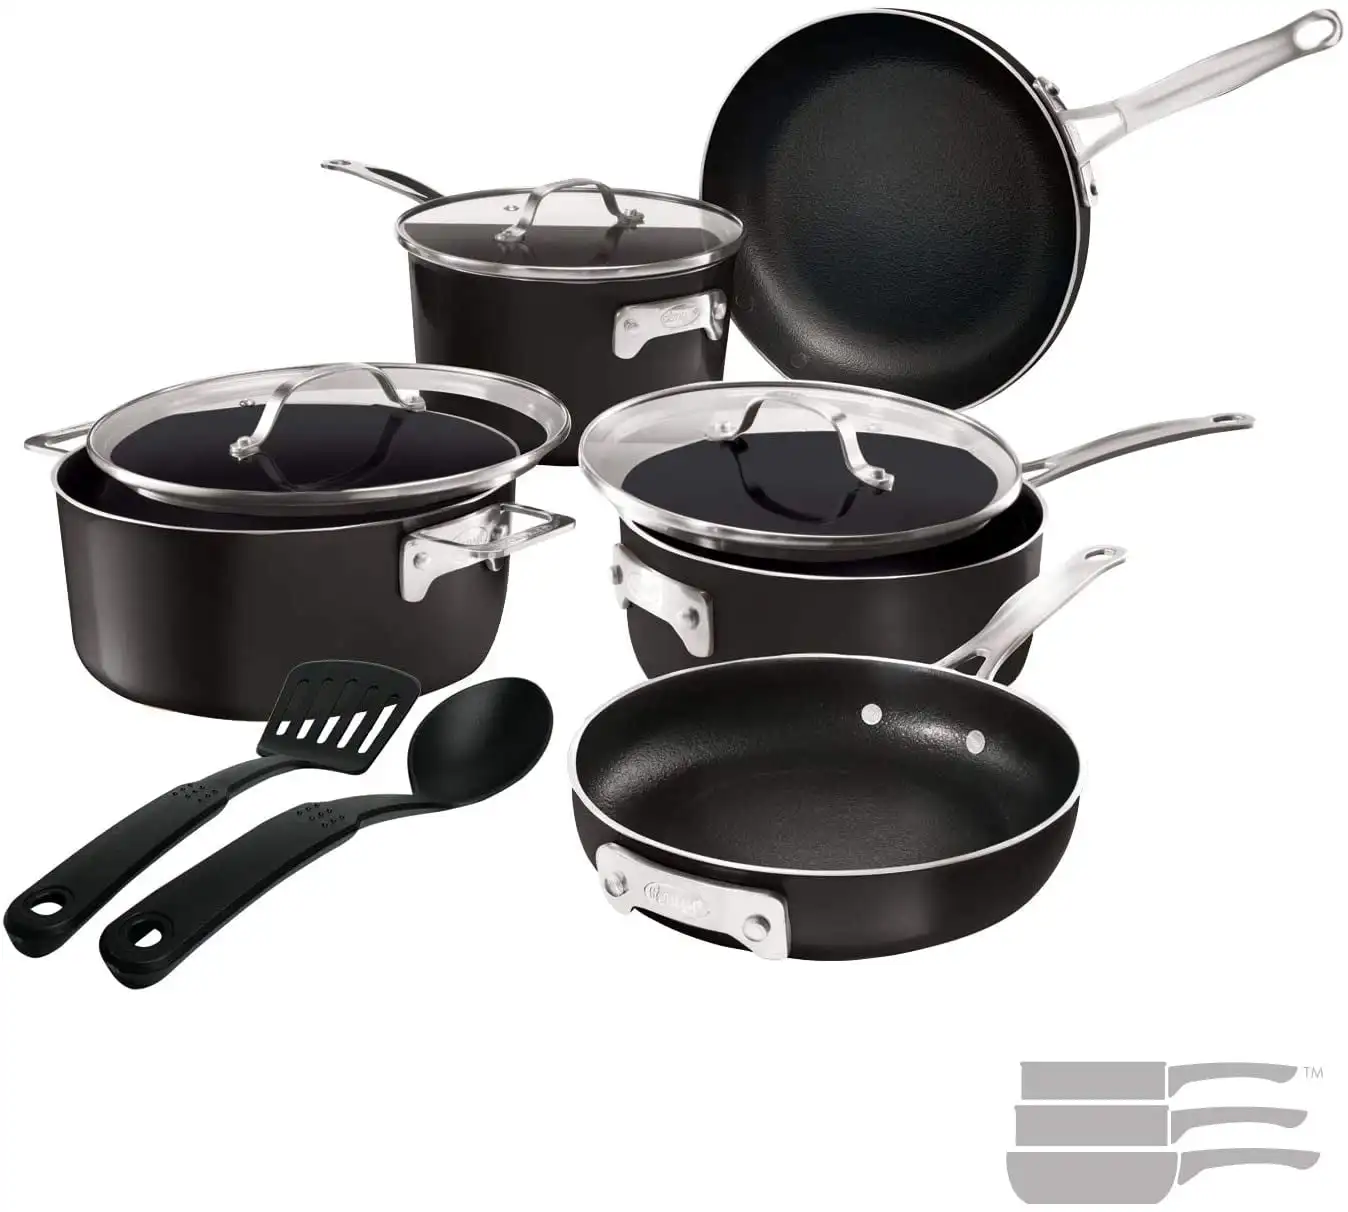 

Набор кастрюль и сковородок Stackmaster, набор посуды из 10 предметов, Штабелируемый дизайн с антипригарным покрытием, включая сковороды